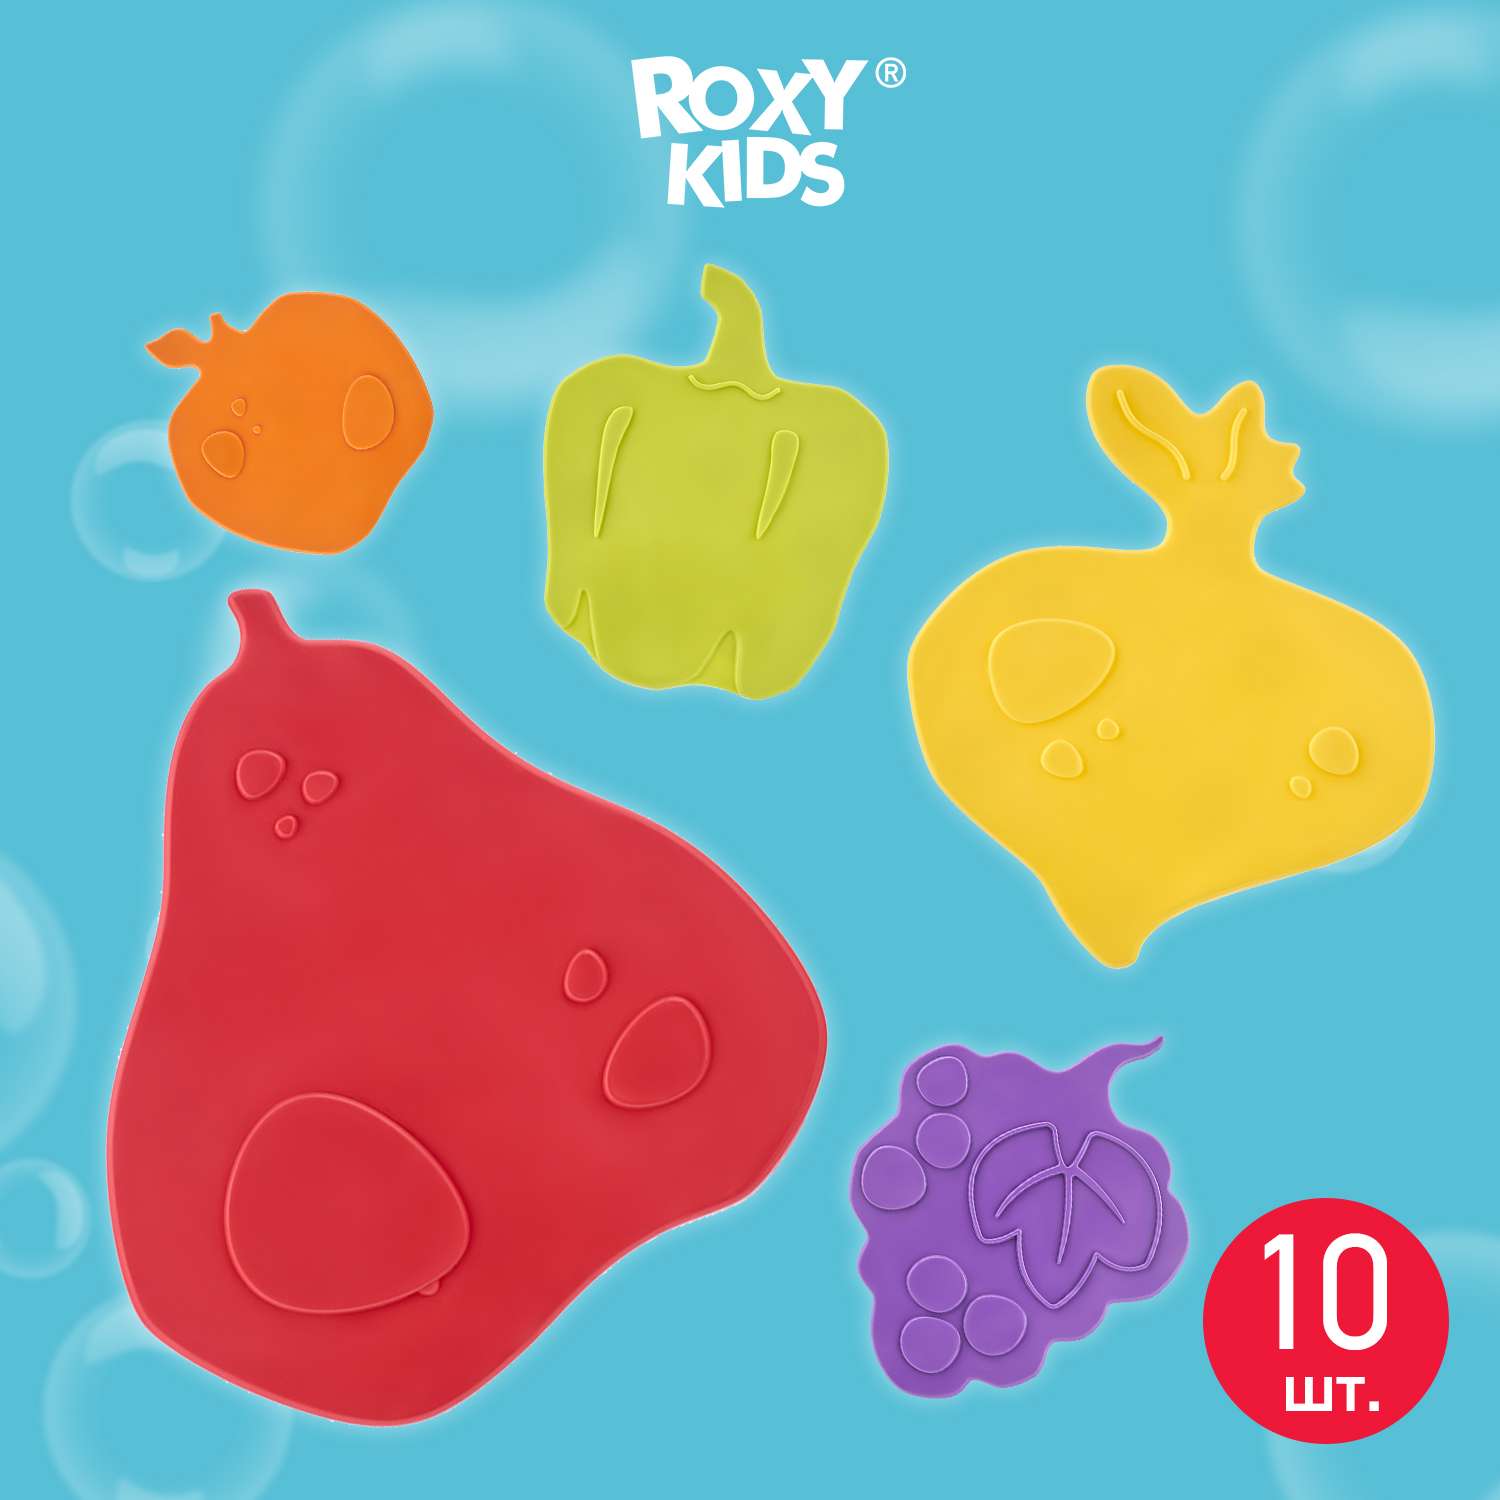 Мини-коврики детские ROXY-KIDS для ванной противоскользящие fresh mix 10 шт цвета в ассортименте - фото 1